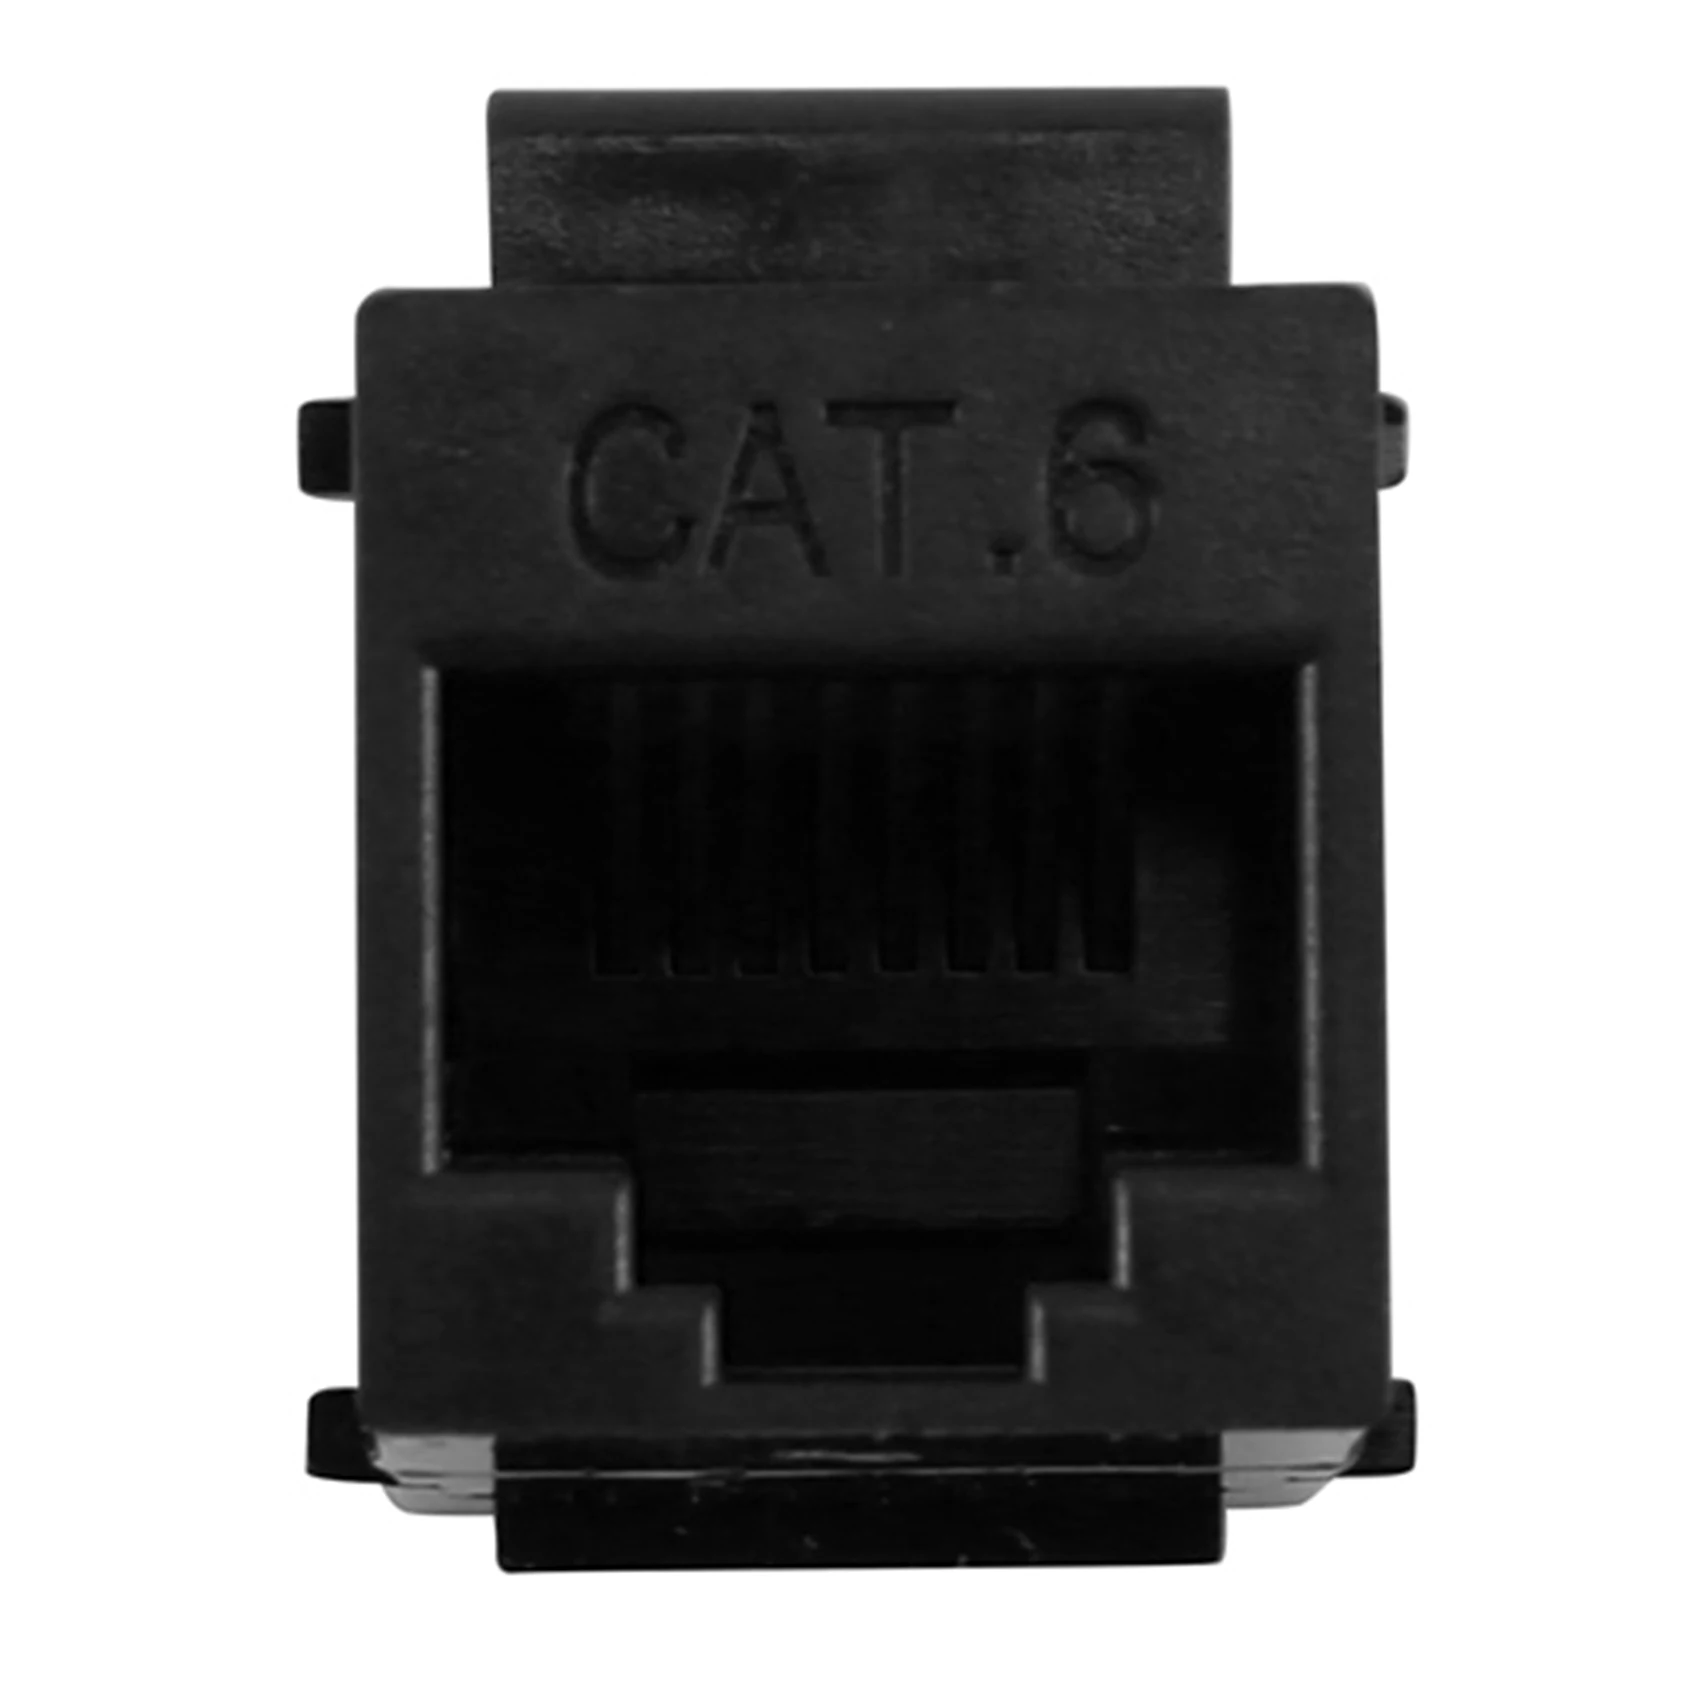 Разъем RJ45 Keystone Jack Cat6 Удлинитель RJ45 Ethernet Network LAN Cat 6 Разъемов Удлинителя Удлинительный адаптер (Черный) Изображение 5